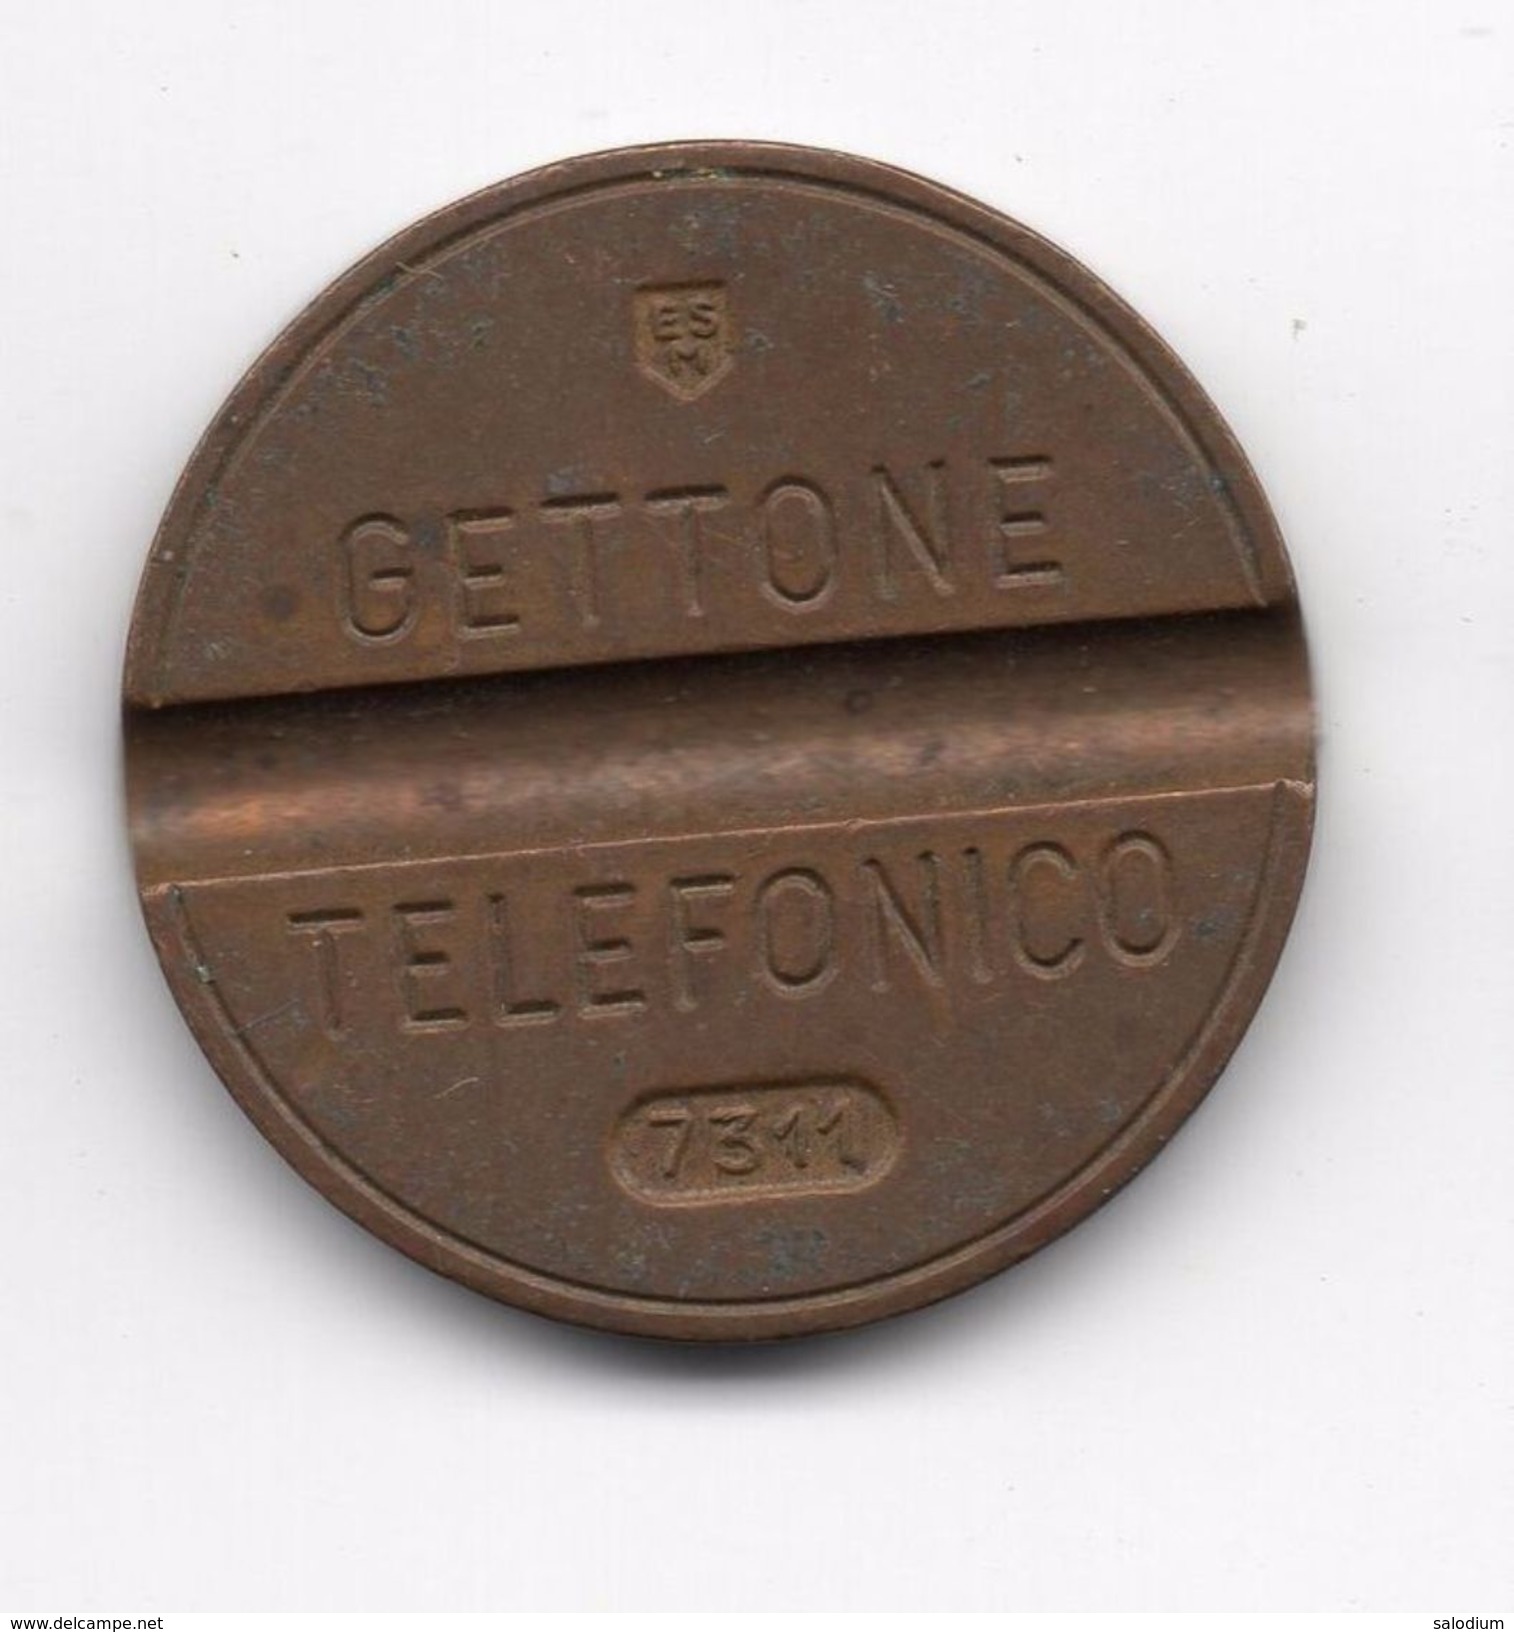 Gettone Telefonico 7311  Token Telephone - (Id-646) - Professionnels/De Société